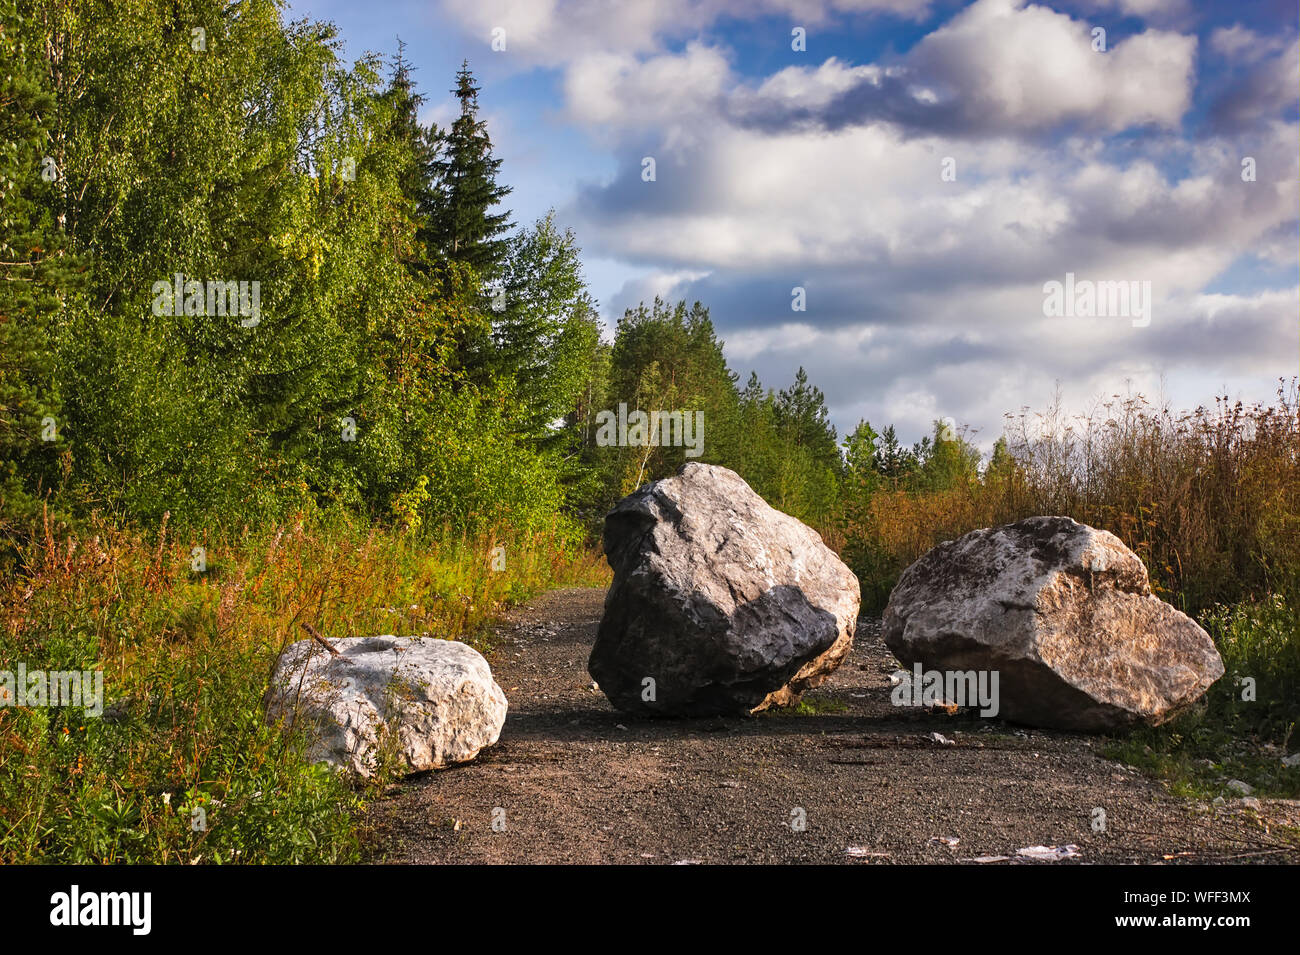 Schotterweg auf einem Berghang im Schwarzwald Mit Tannenholz im Hintergrund  Stockfotografie - Alamy